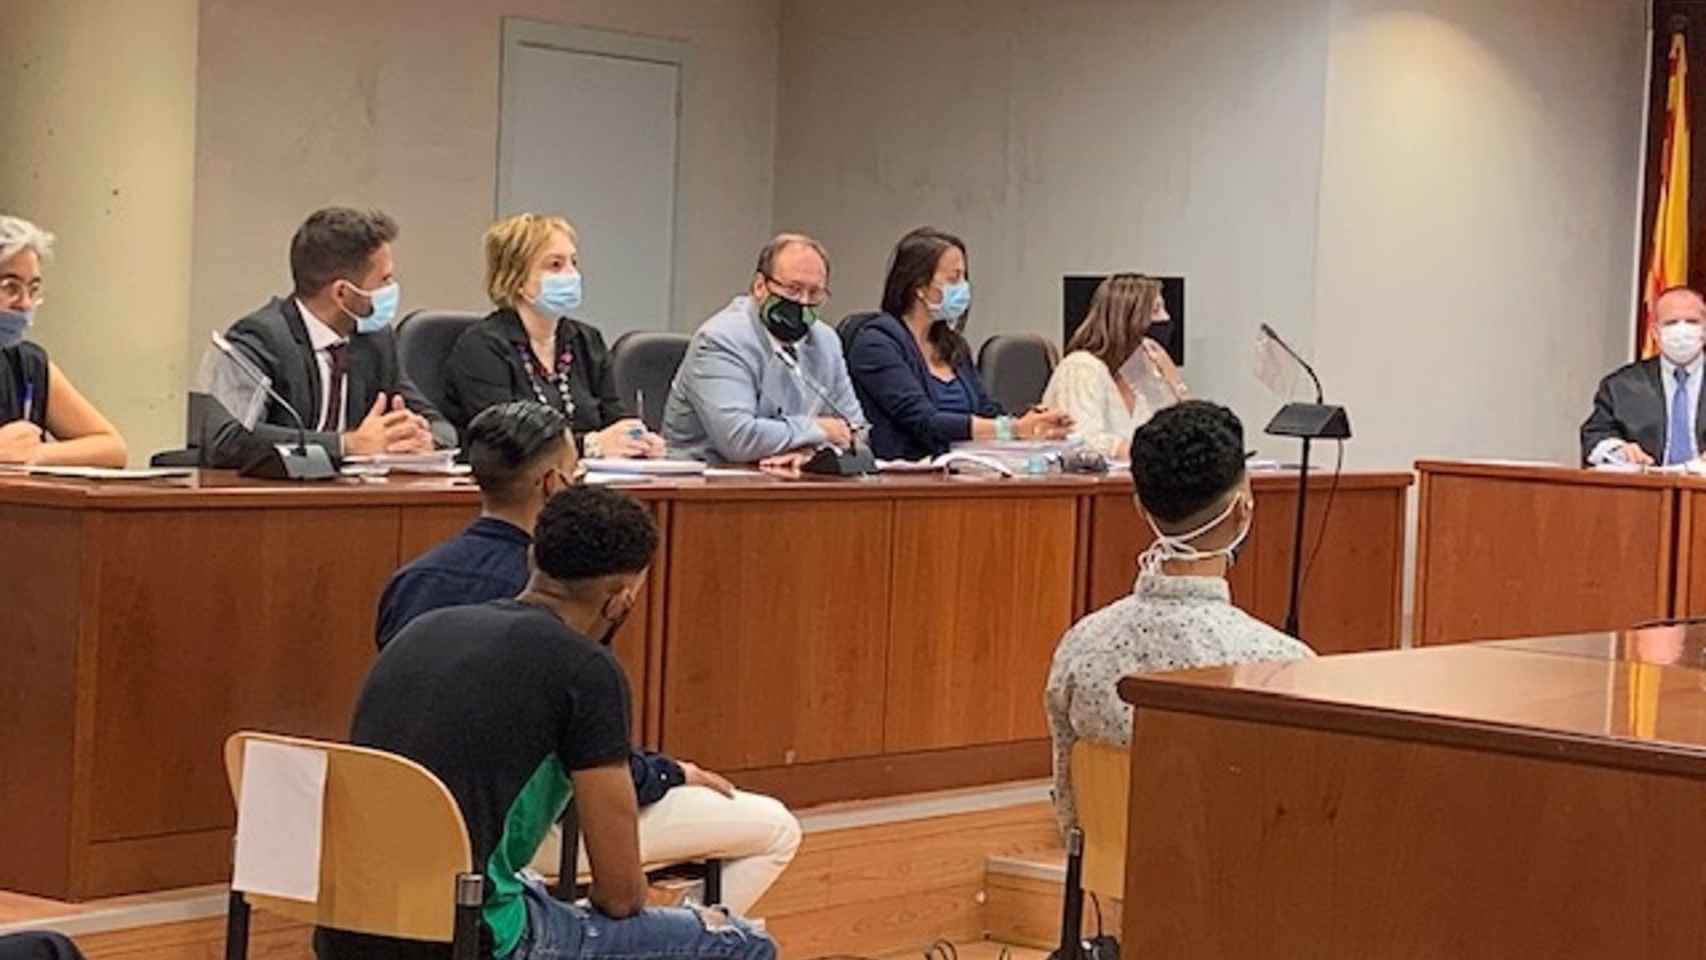 Juicio de jóvenes acusados de robos en viviendas de Lleida y Barcelona / EUROPA PRESS